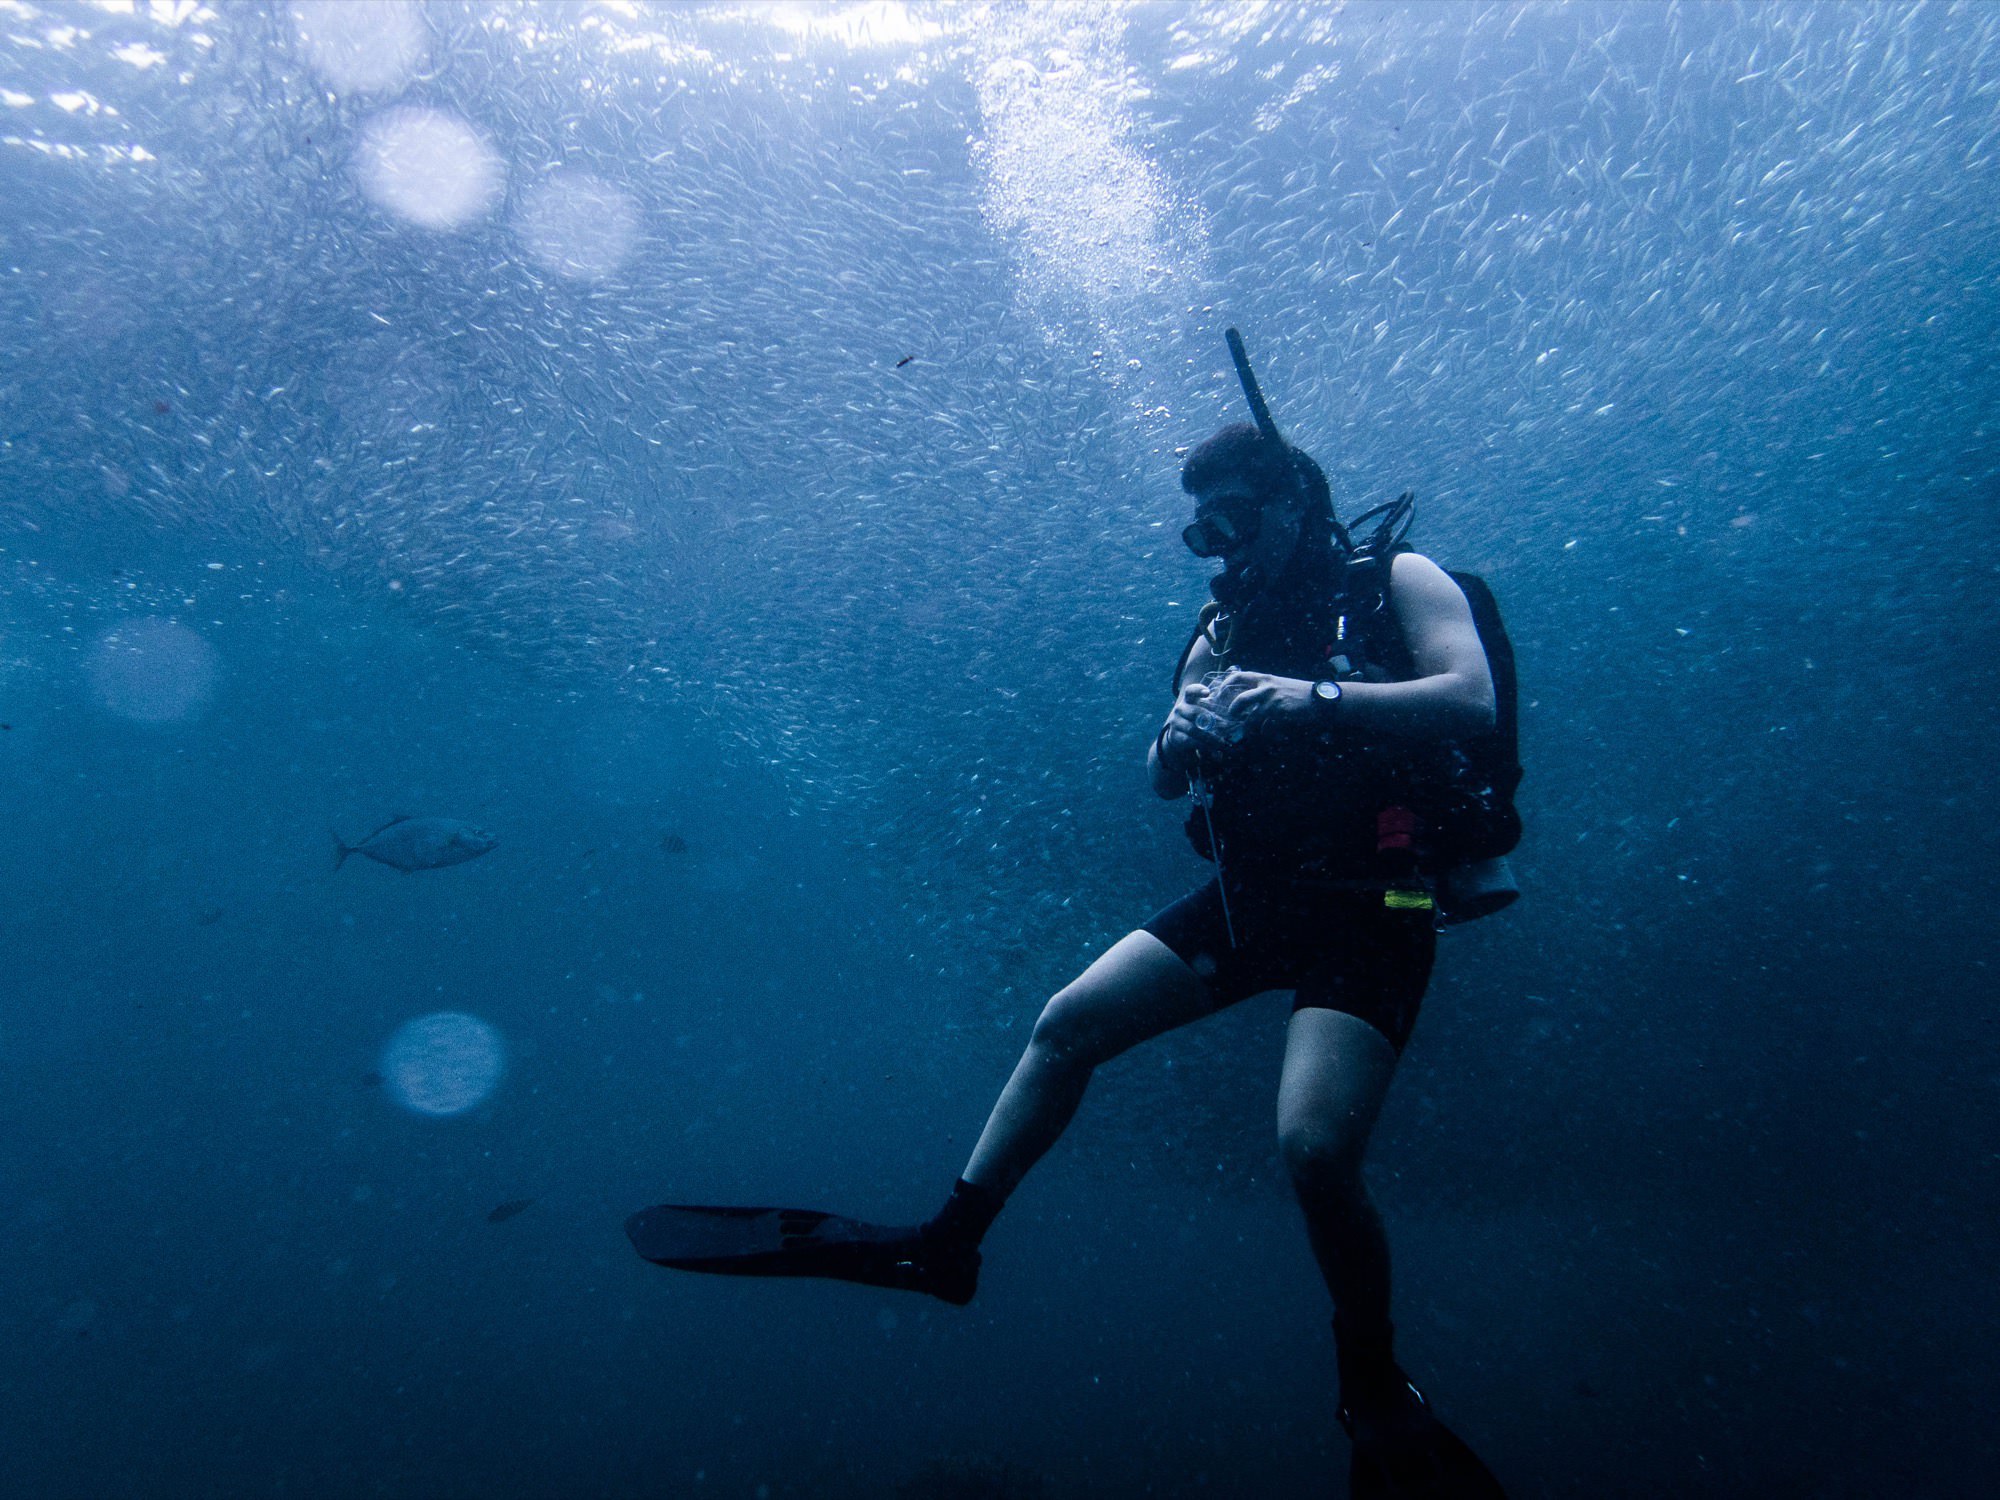 菲律宾 | 18米深蓝:薄荷岛&宿务 OW潜水旅行